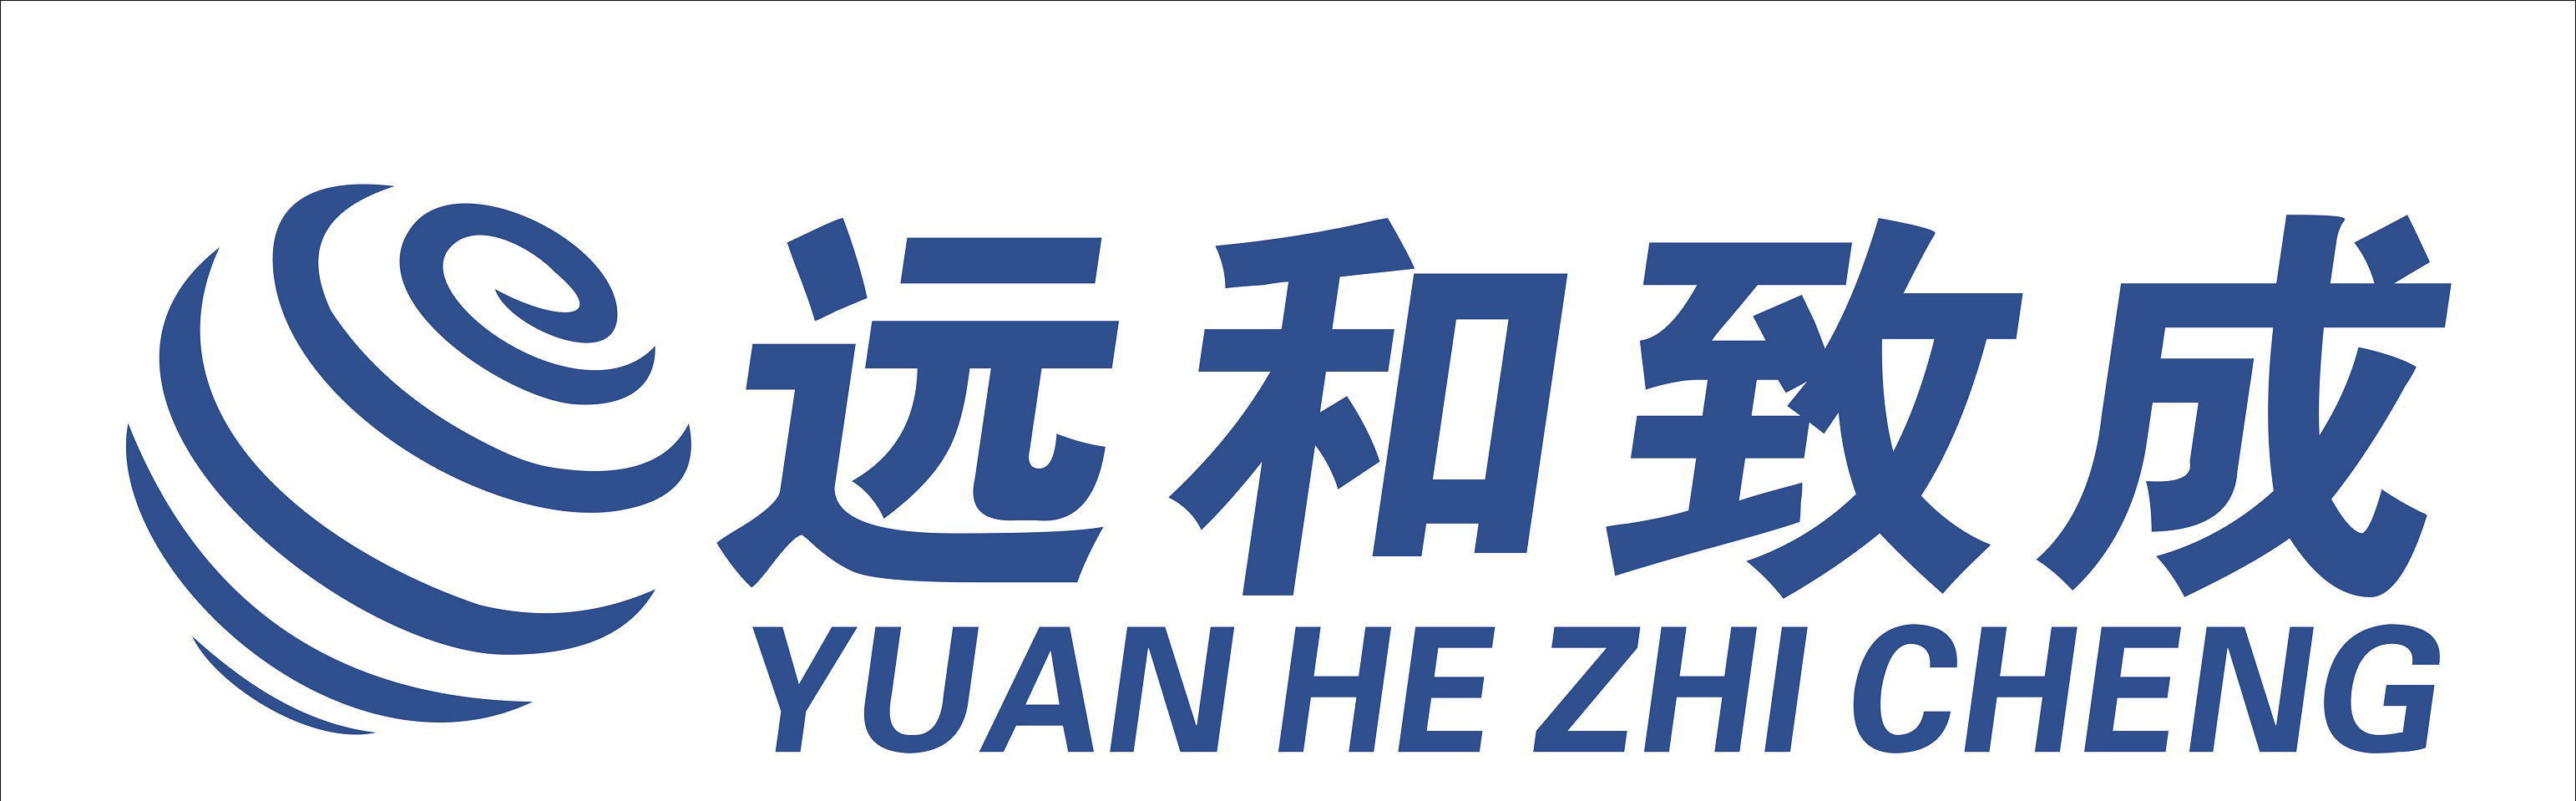 shandong-yuanhezhicheng-iInformation-technology-logo